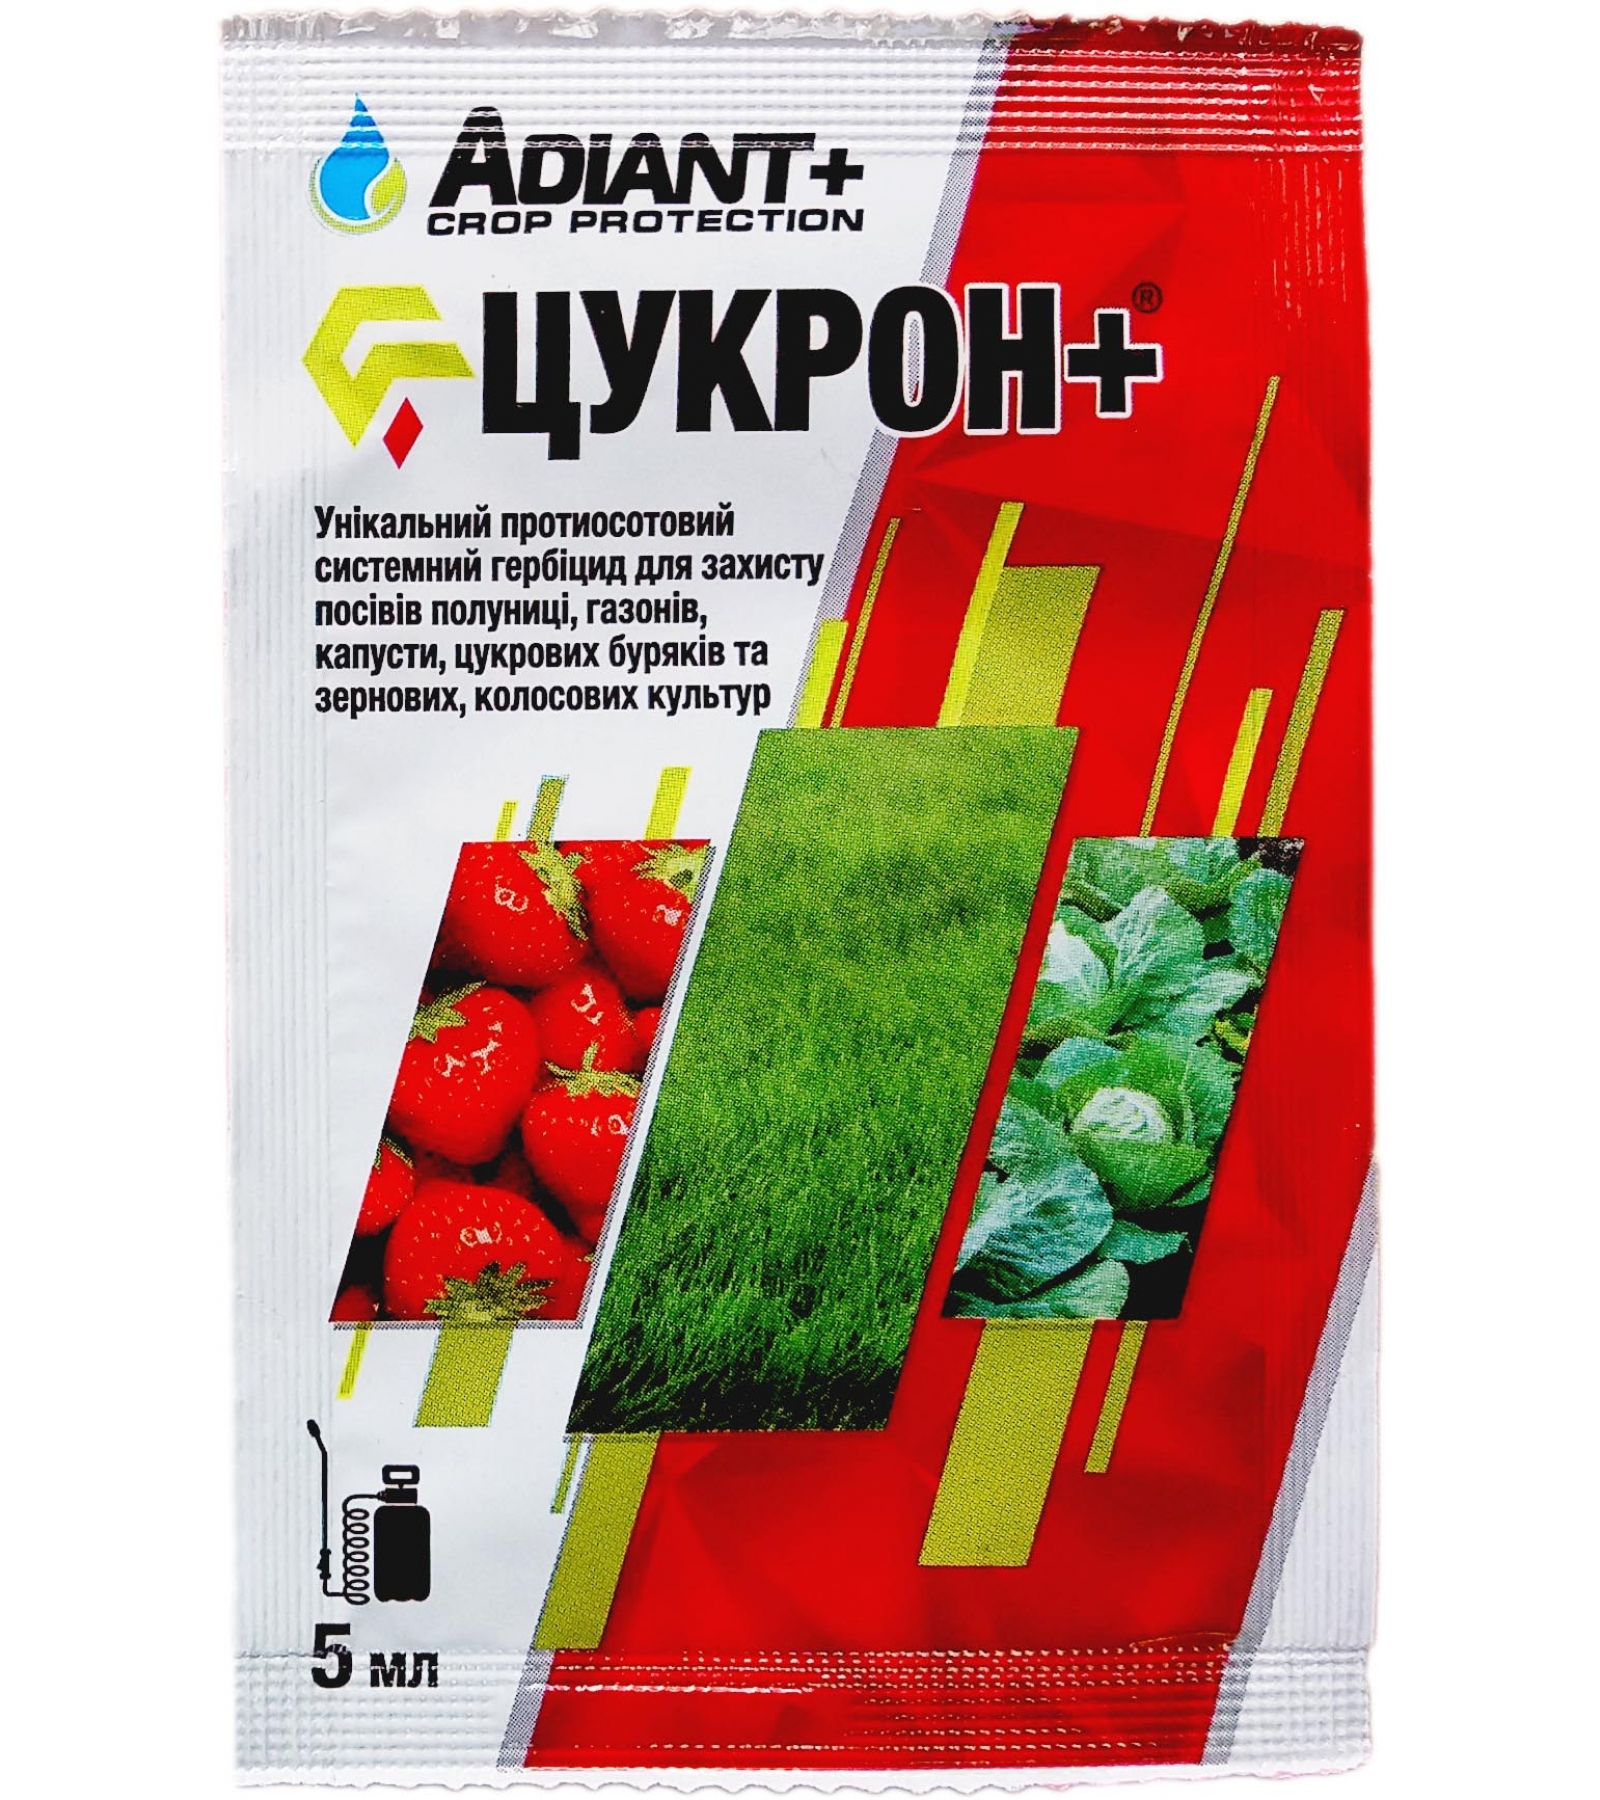 Лучшие пестициды от сорняков, правила обработки, самодельные гербициды